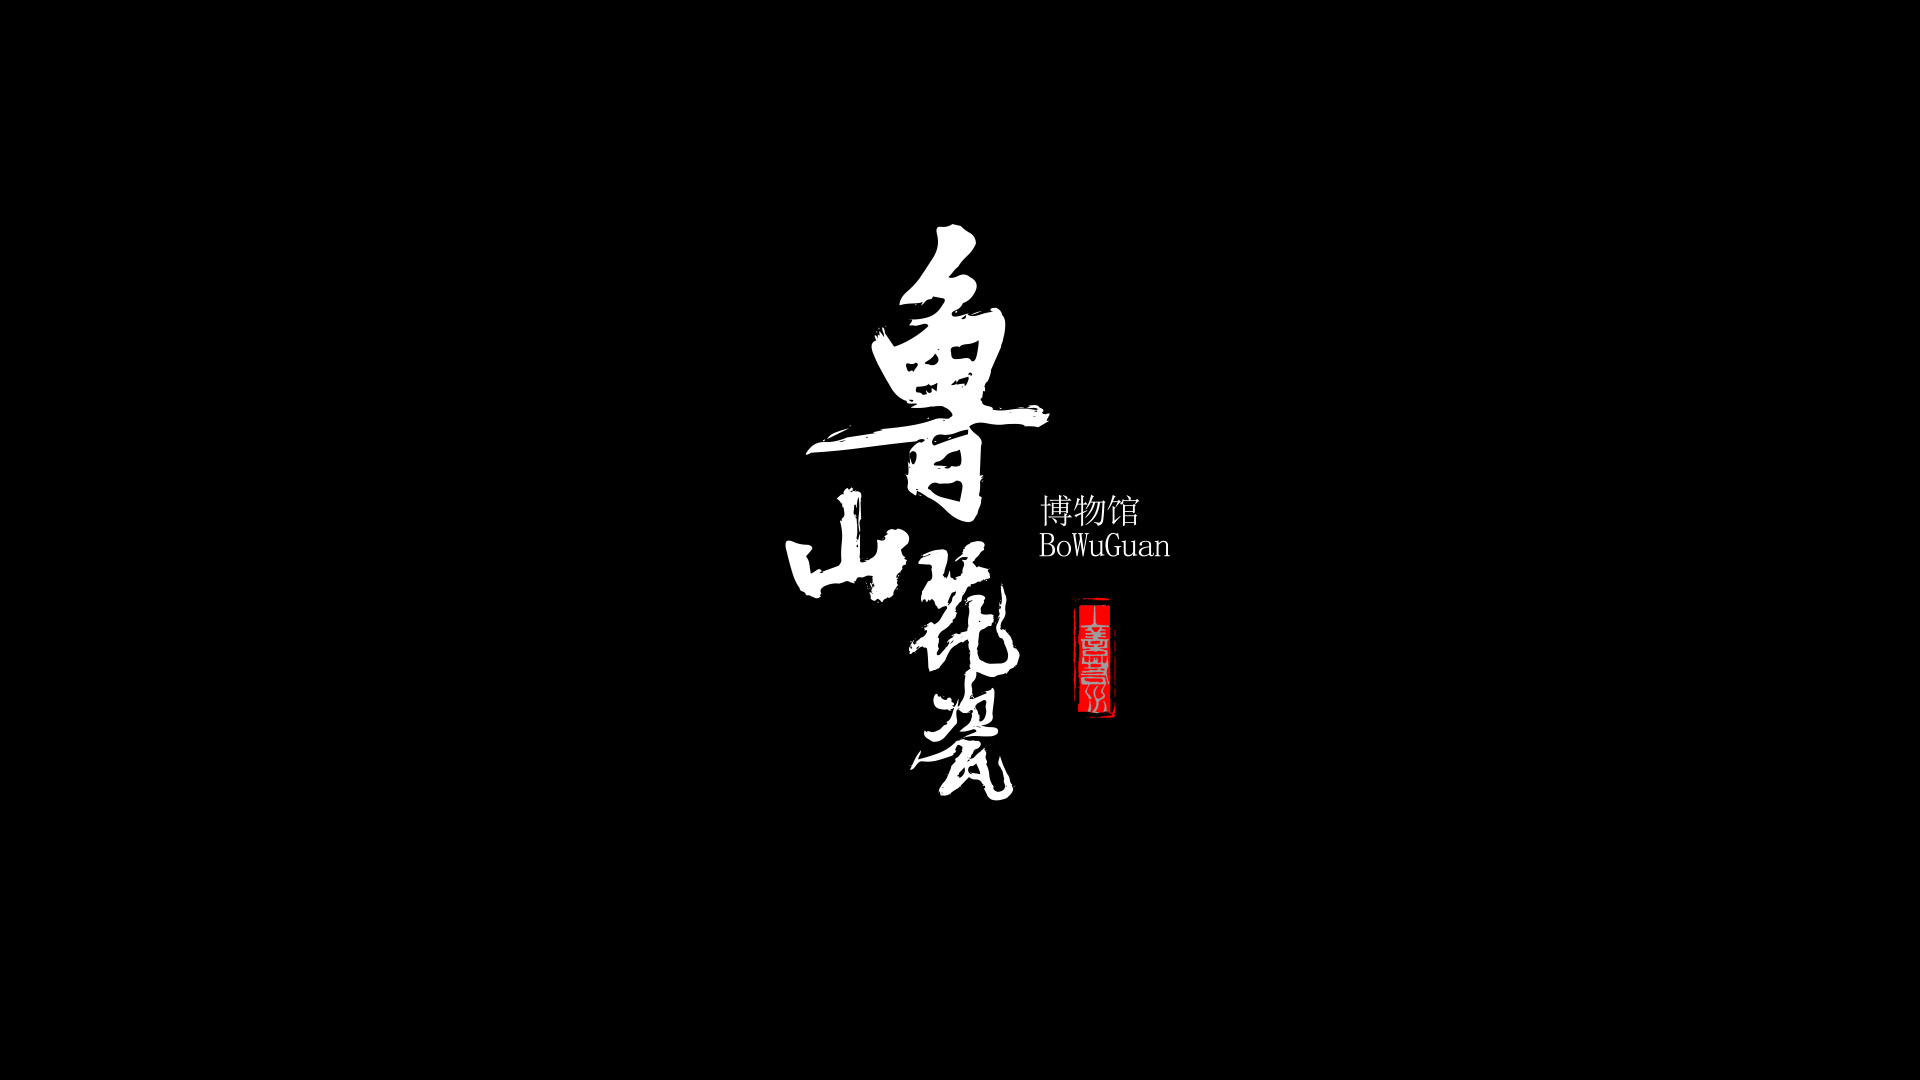 影视动漫竞赛作品——鲁山花瓷博物馆宣传片